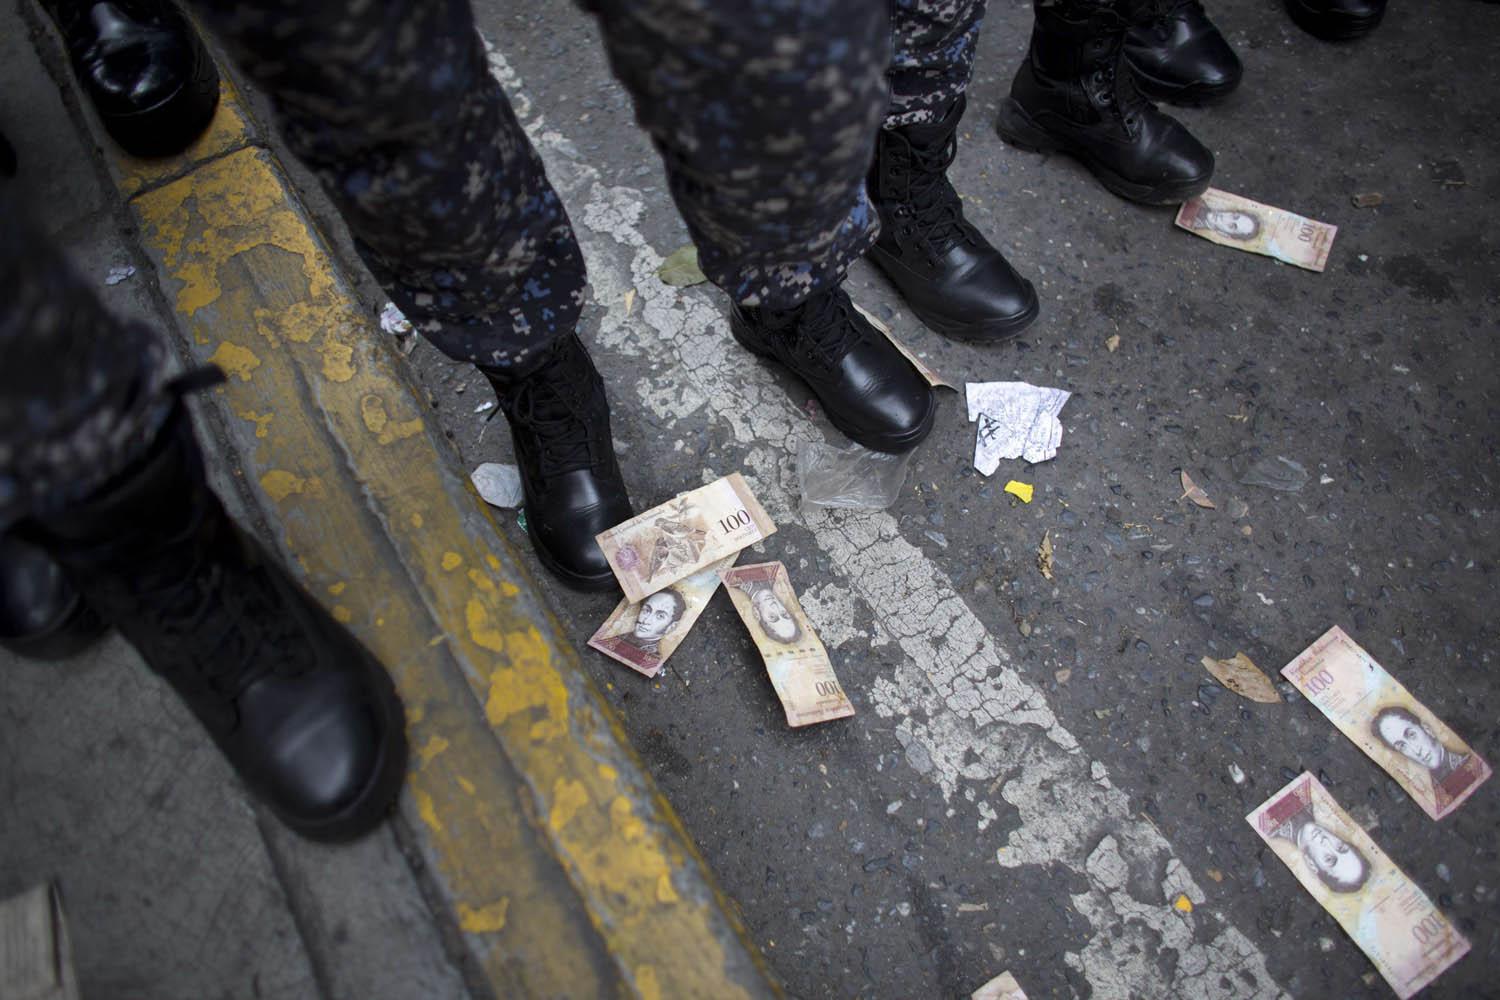 متظاهرون يلقون أوراق نقدية تحت اقدام جنود خرجوا لمنع التظاهرات في كراكاس